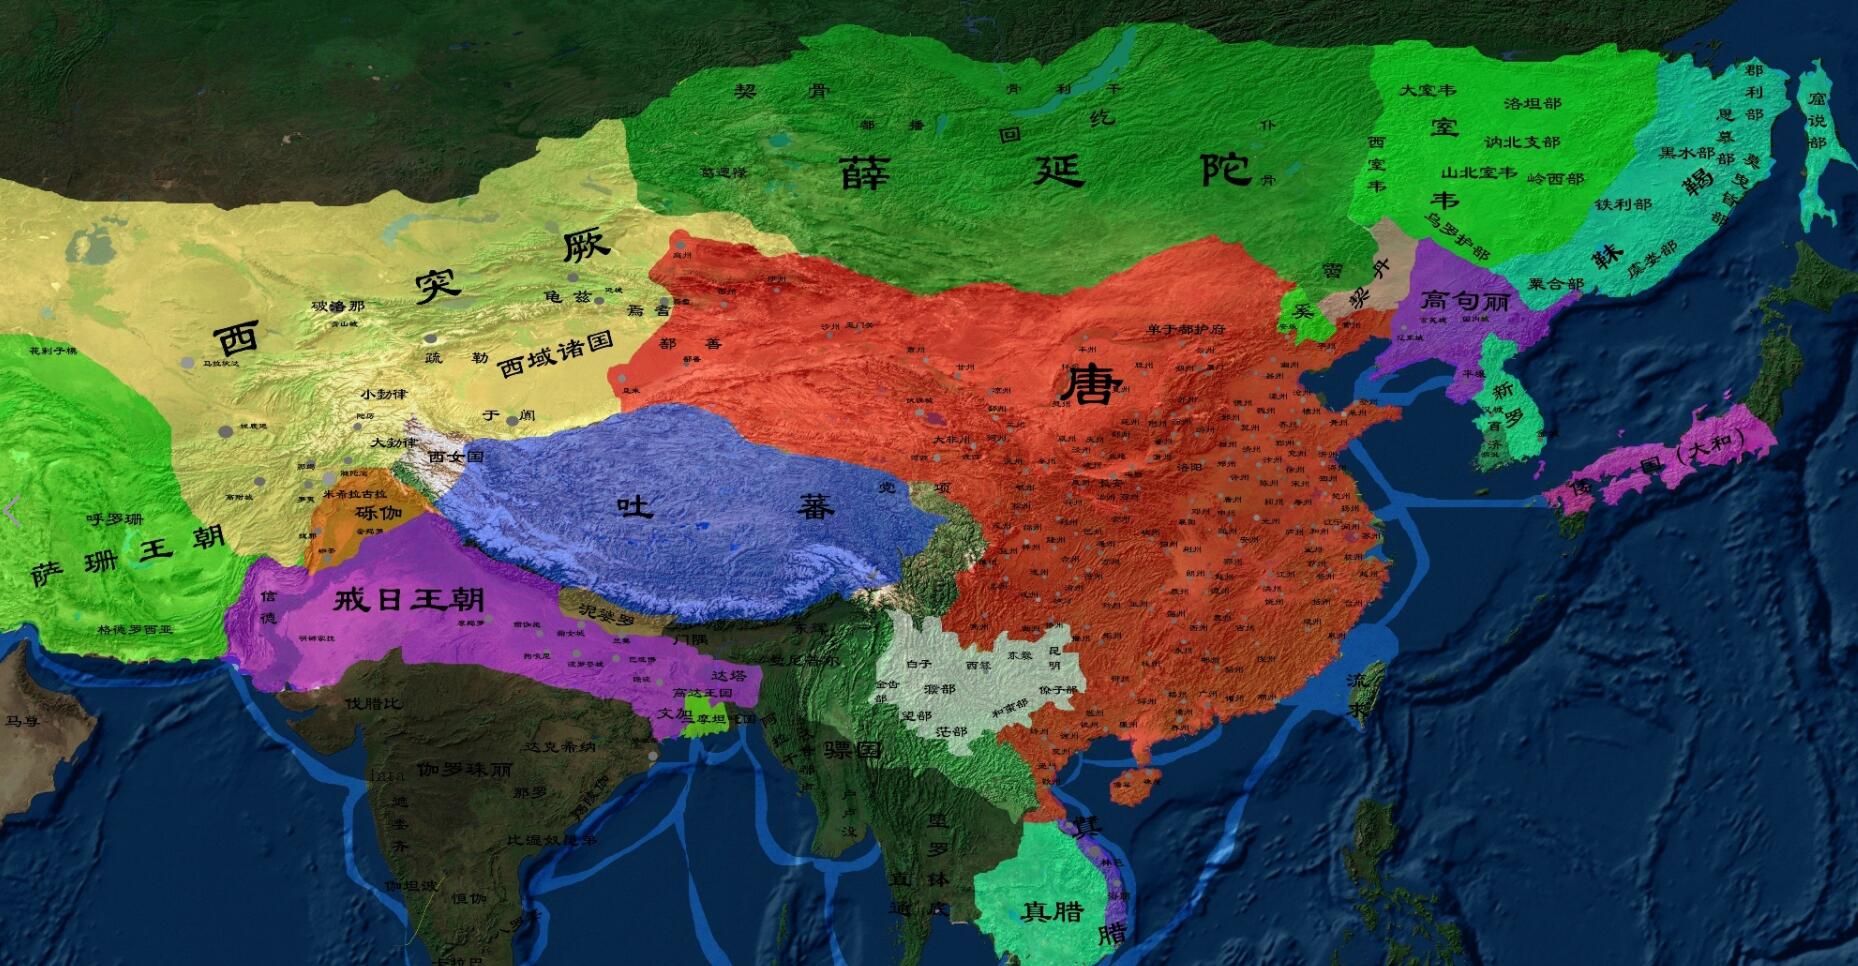 唐朝维持了三个世纪的统治,唐朝无疑是那时候世界上最强大的帝国